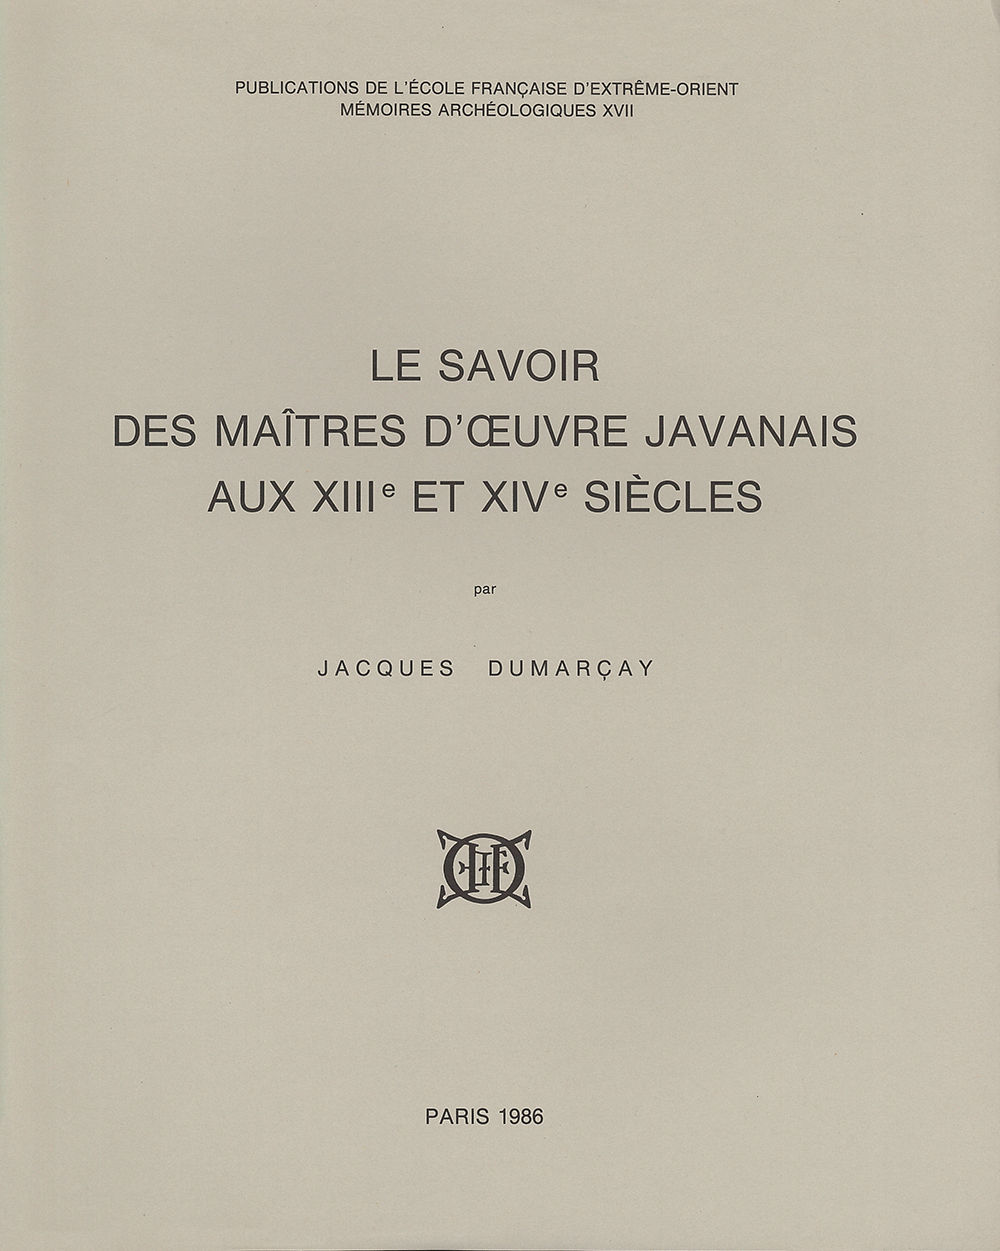 Le savoir des maîtres d'oeuvre javanais aux XIIIe et XIVe siècles